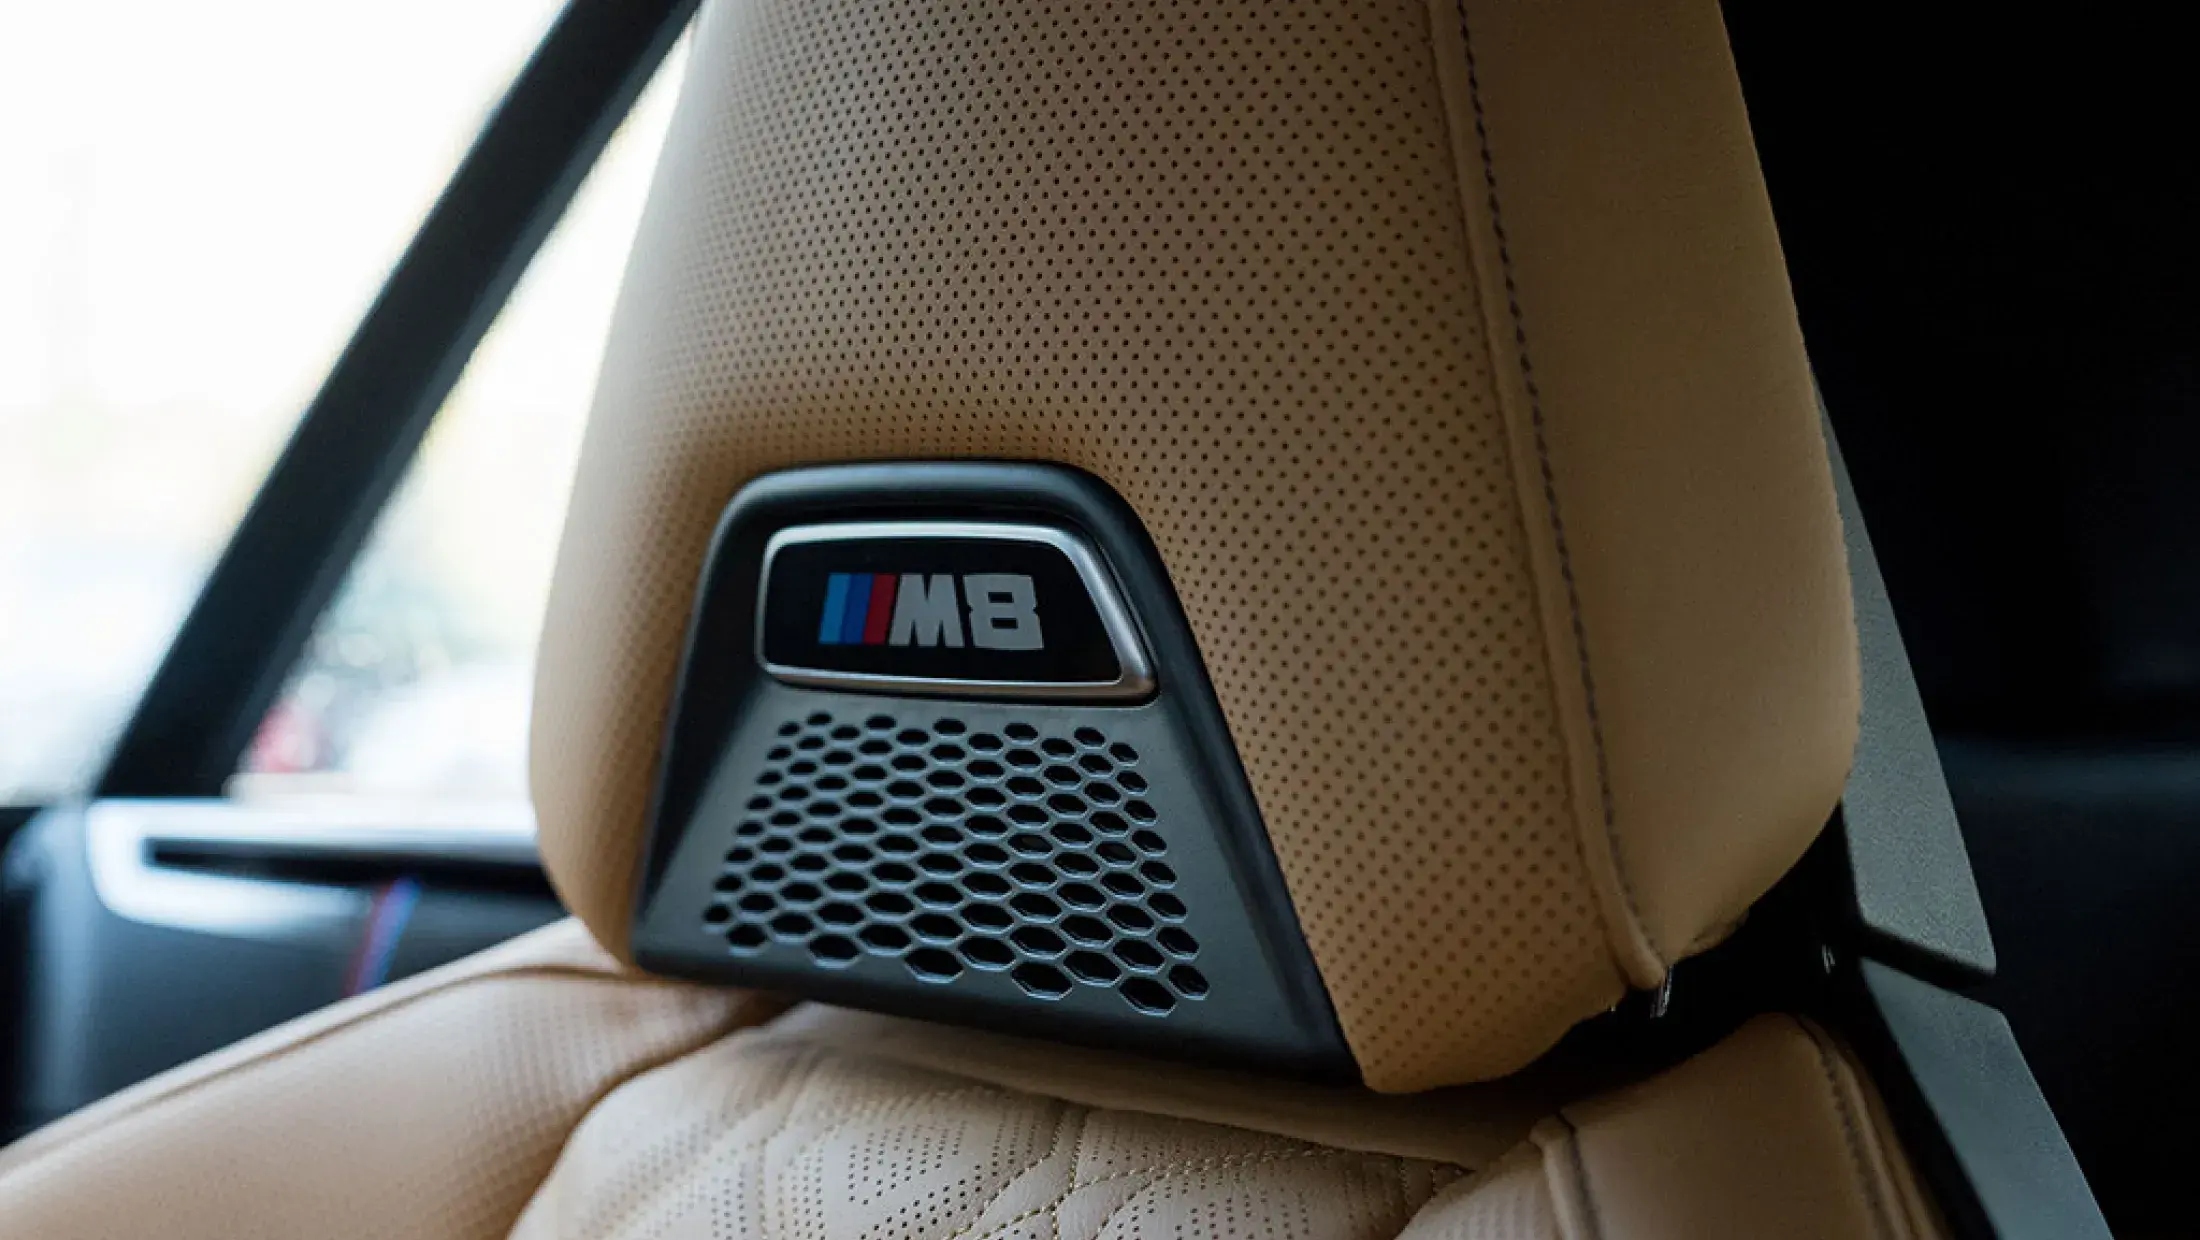 BMW M8 Competition Cabrio F91 Brands Hatch Grau Metallic Volleder Merino Midrand Beige Bergwerff